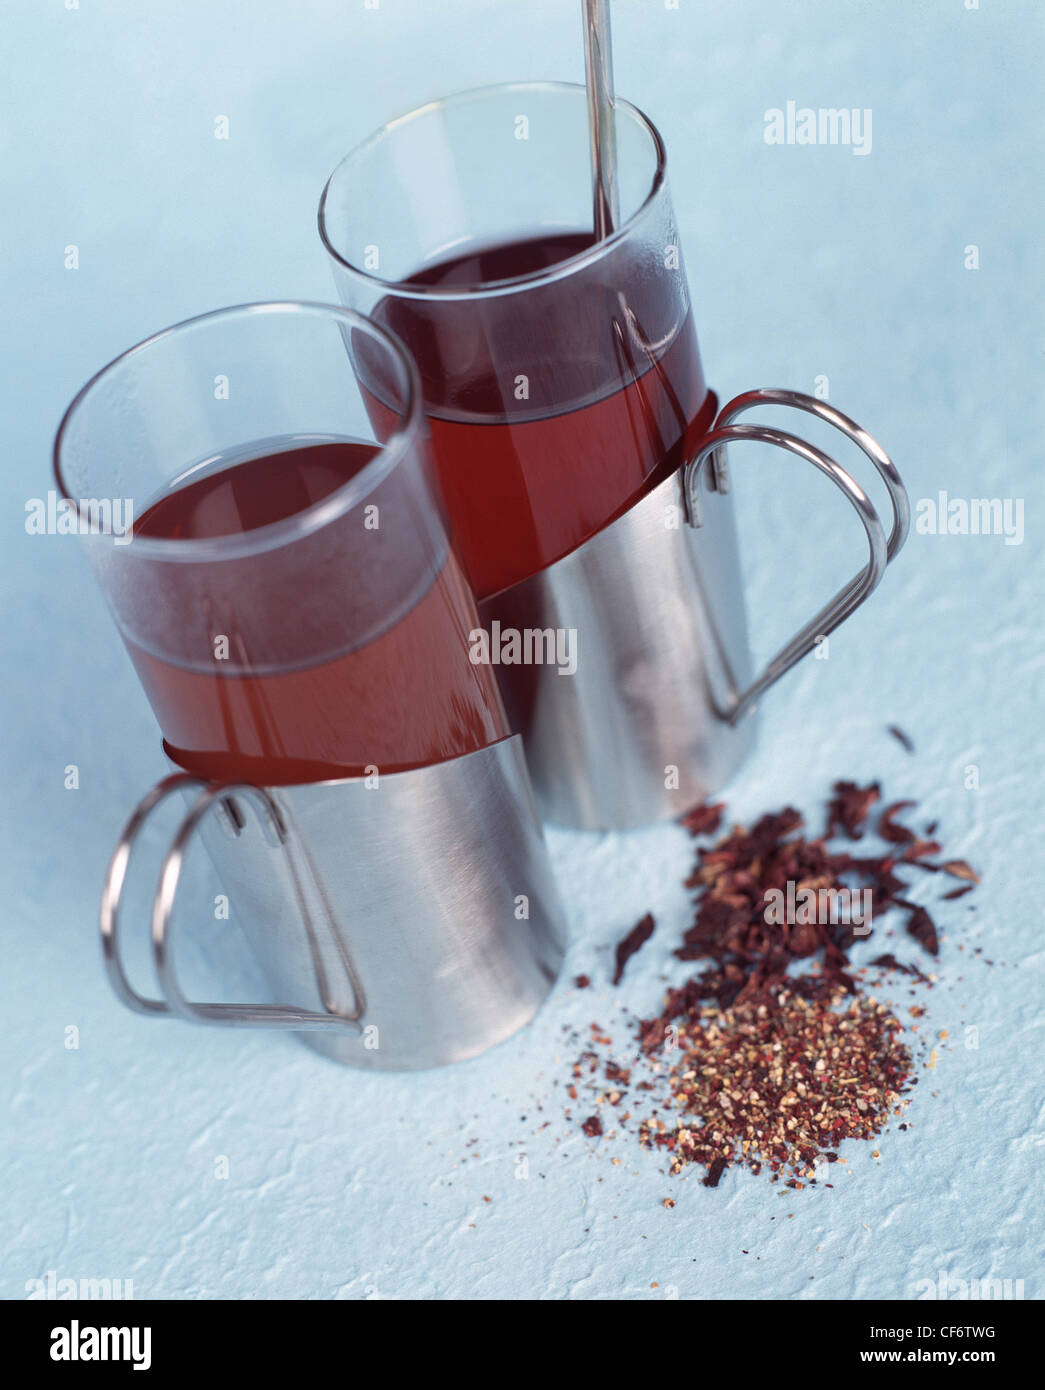 Due coppe d'argento con bicchieri di tè alle erbe con tè alle erbe foglie in primo piano cucchiaio d'argento in una delle coppe Foto Stock